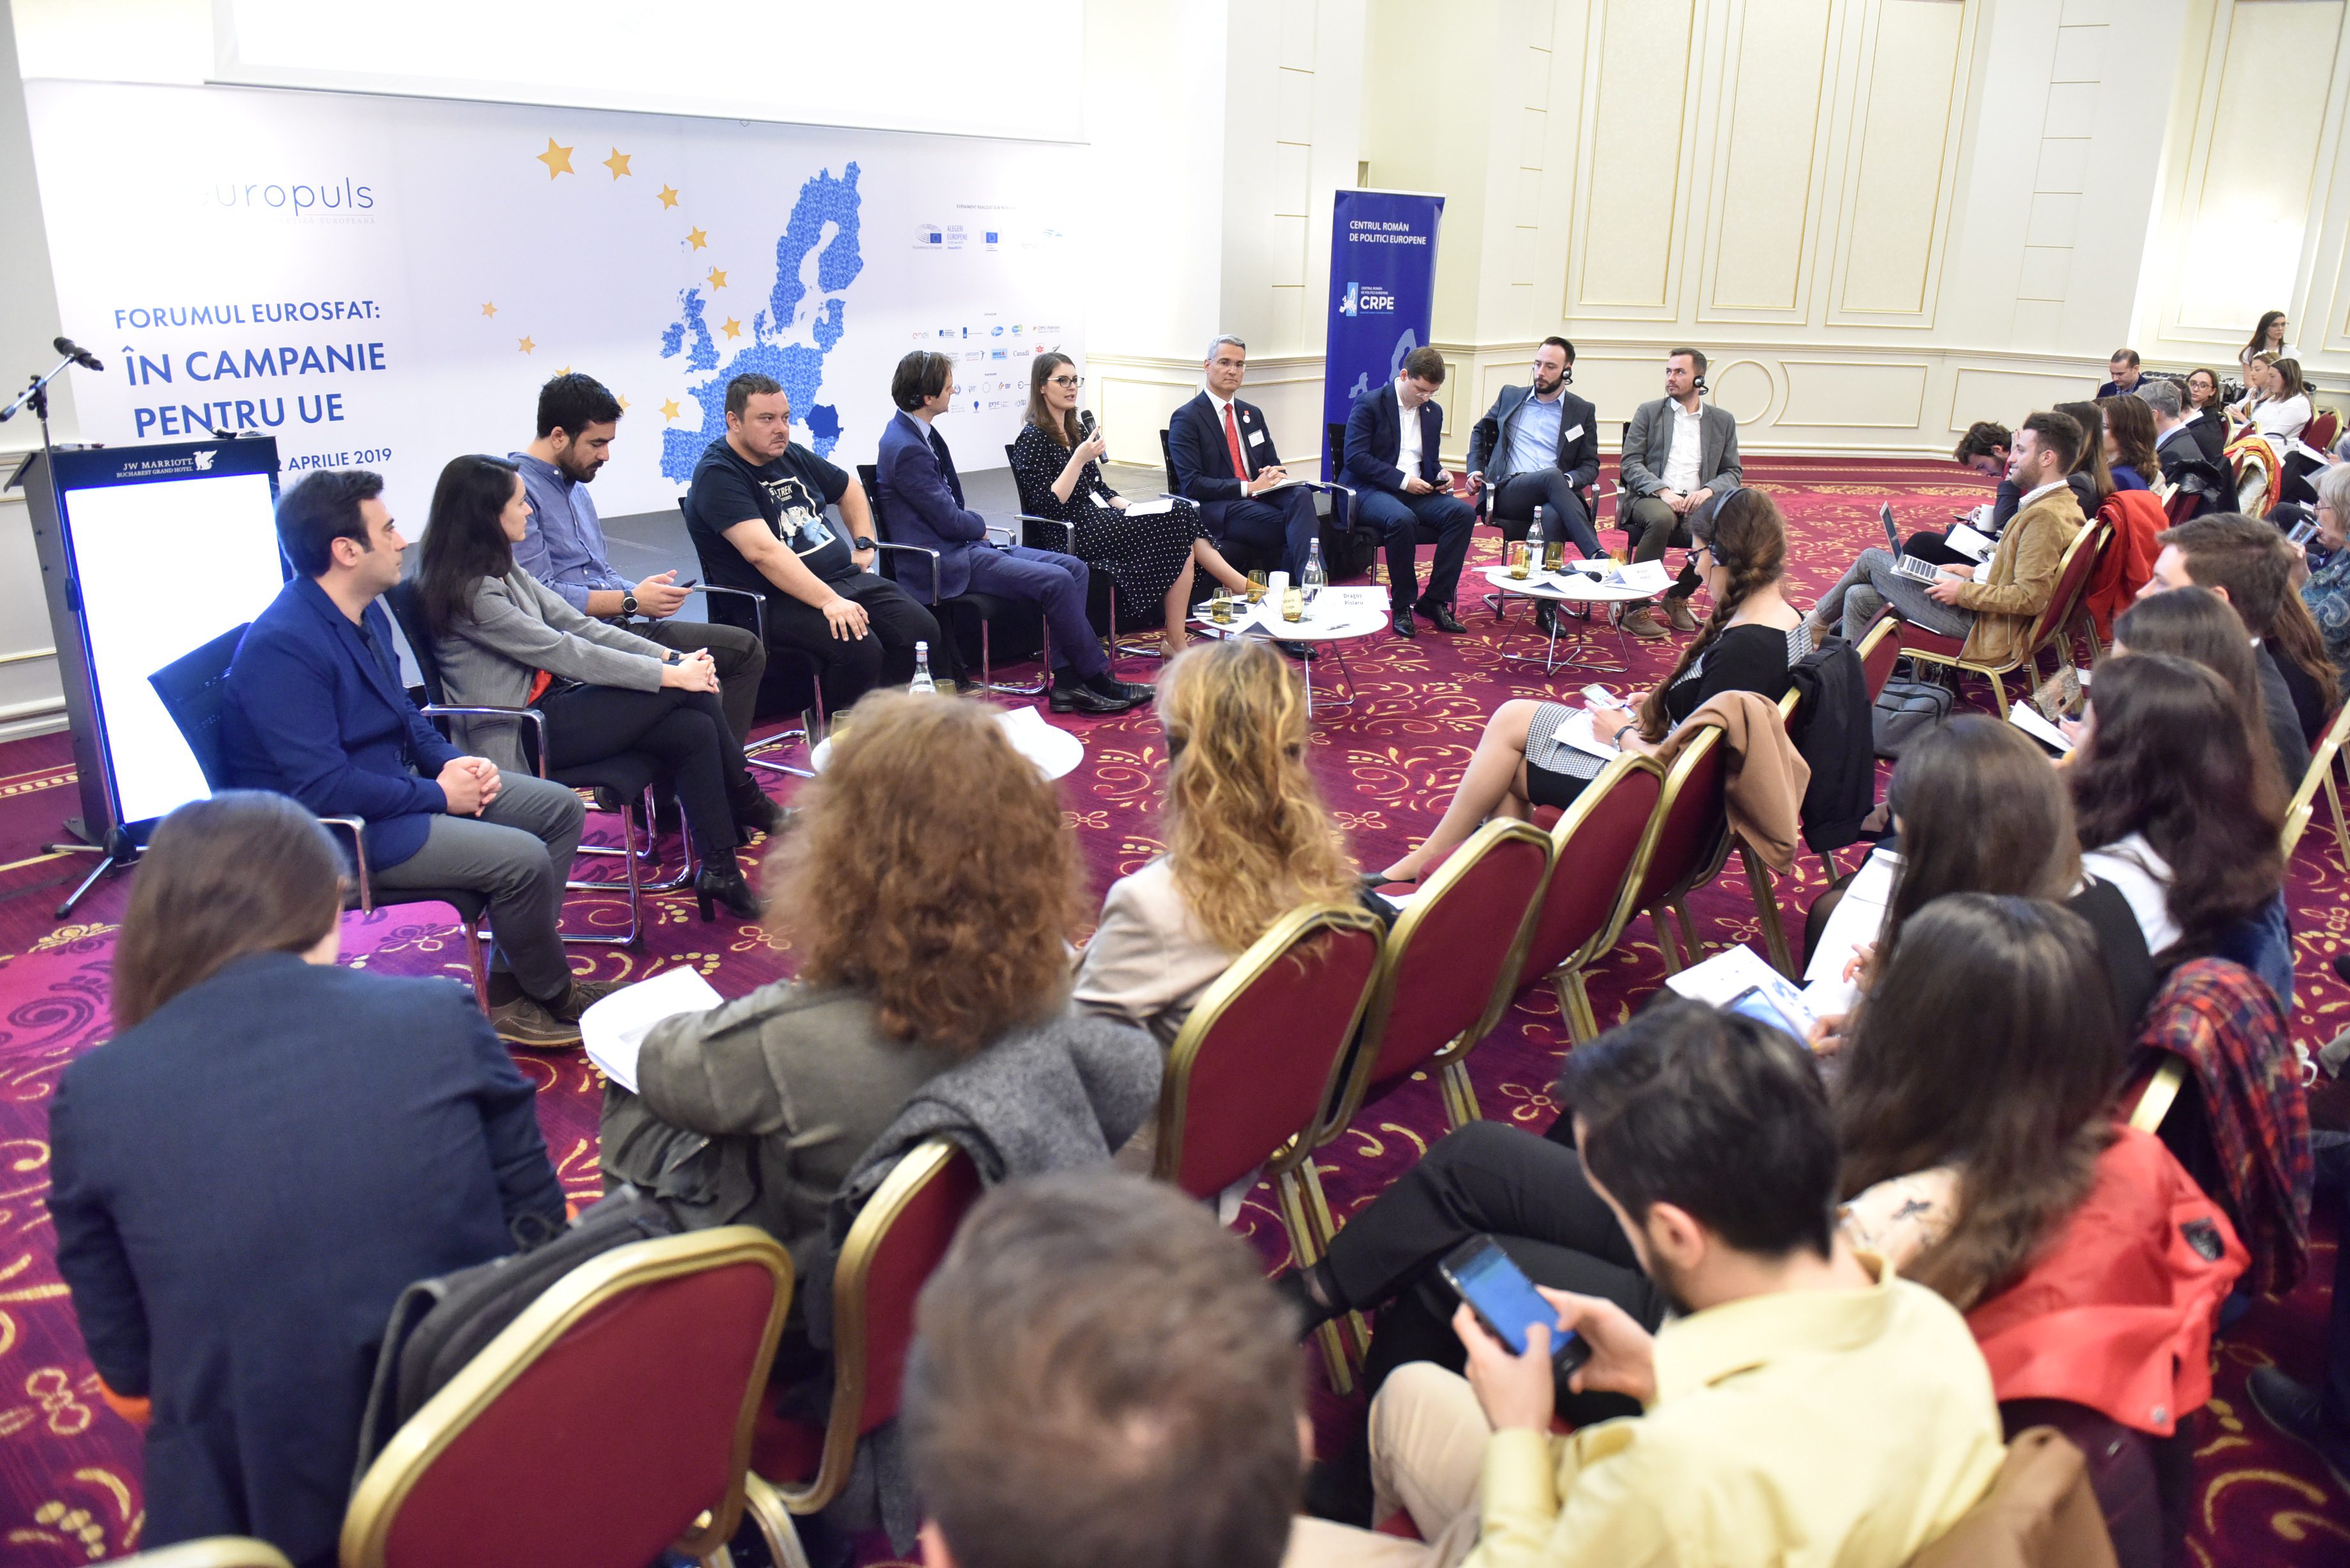 Forum Eurosfat 2019: Poate implicarea civică să influențeze rezultatul alegerilor europene?